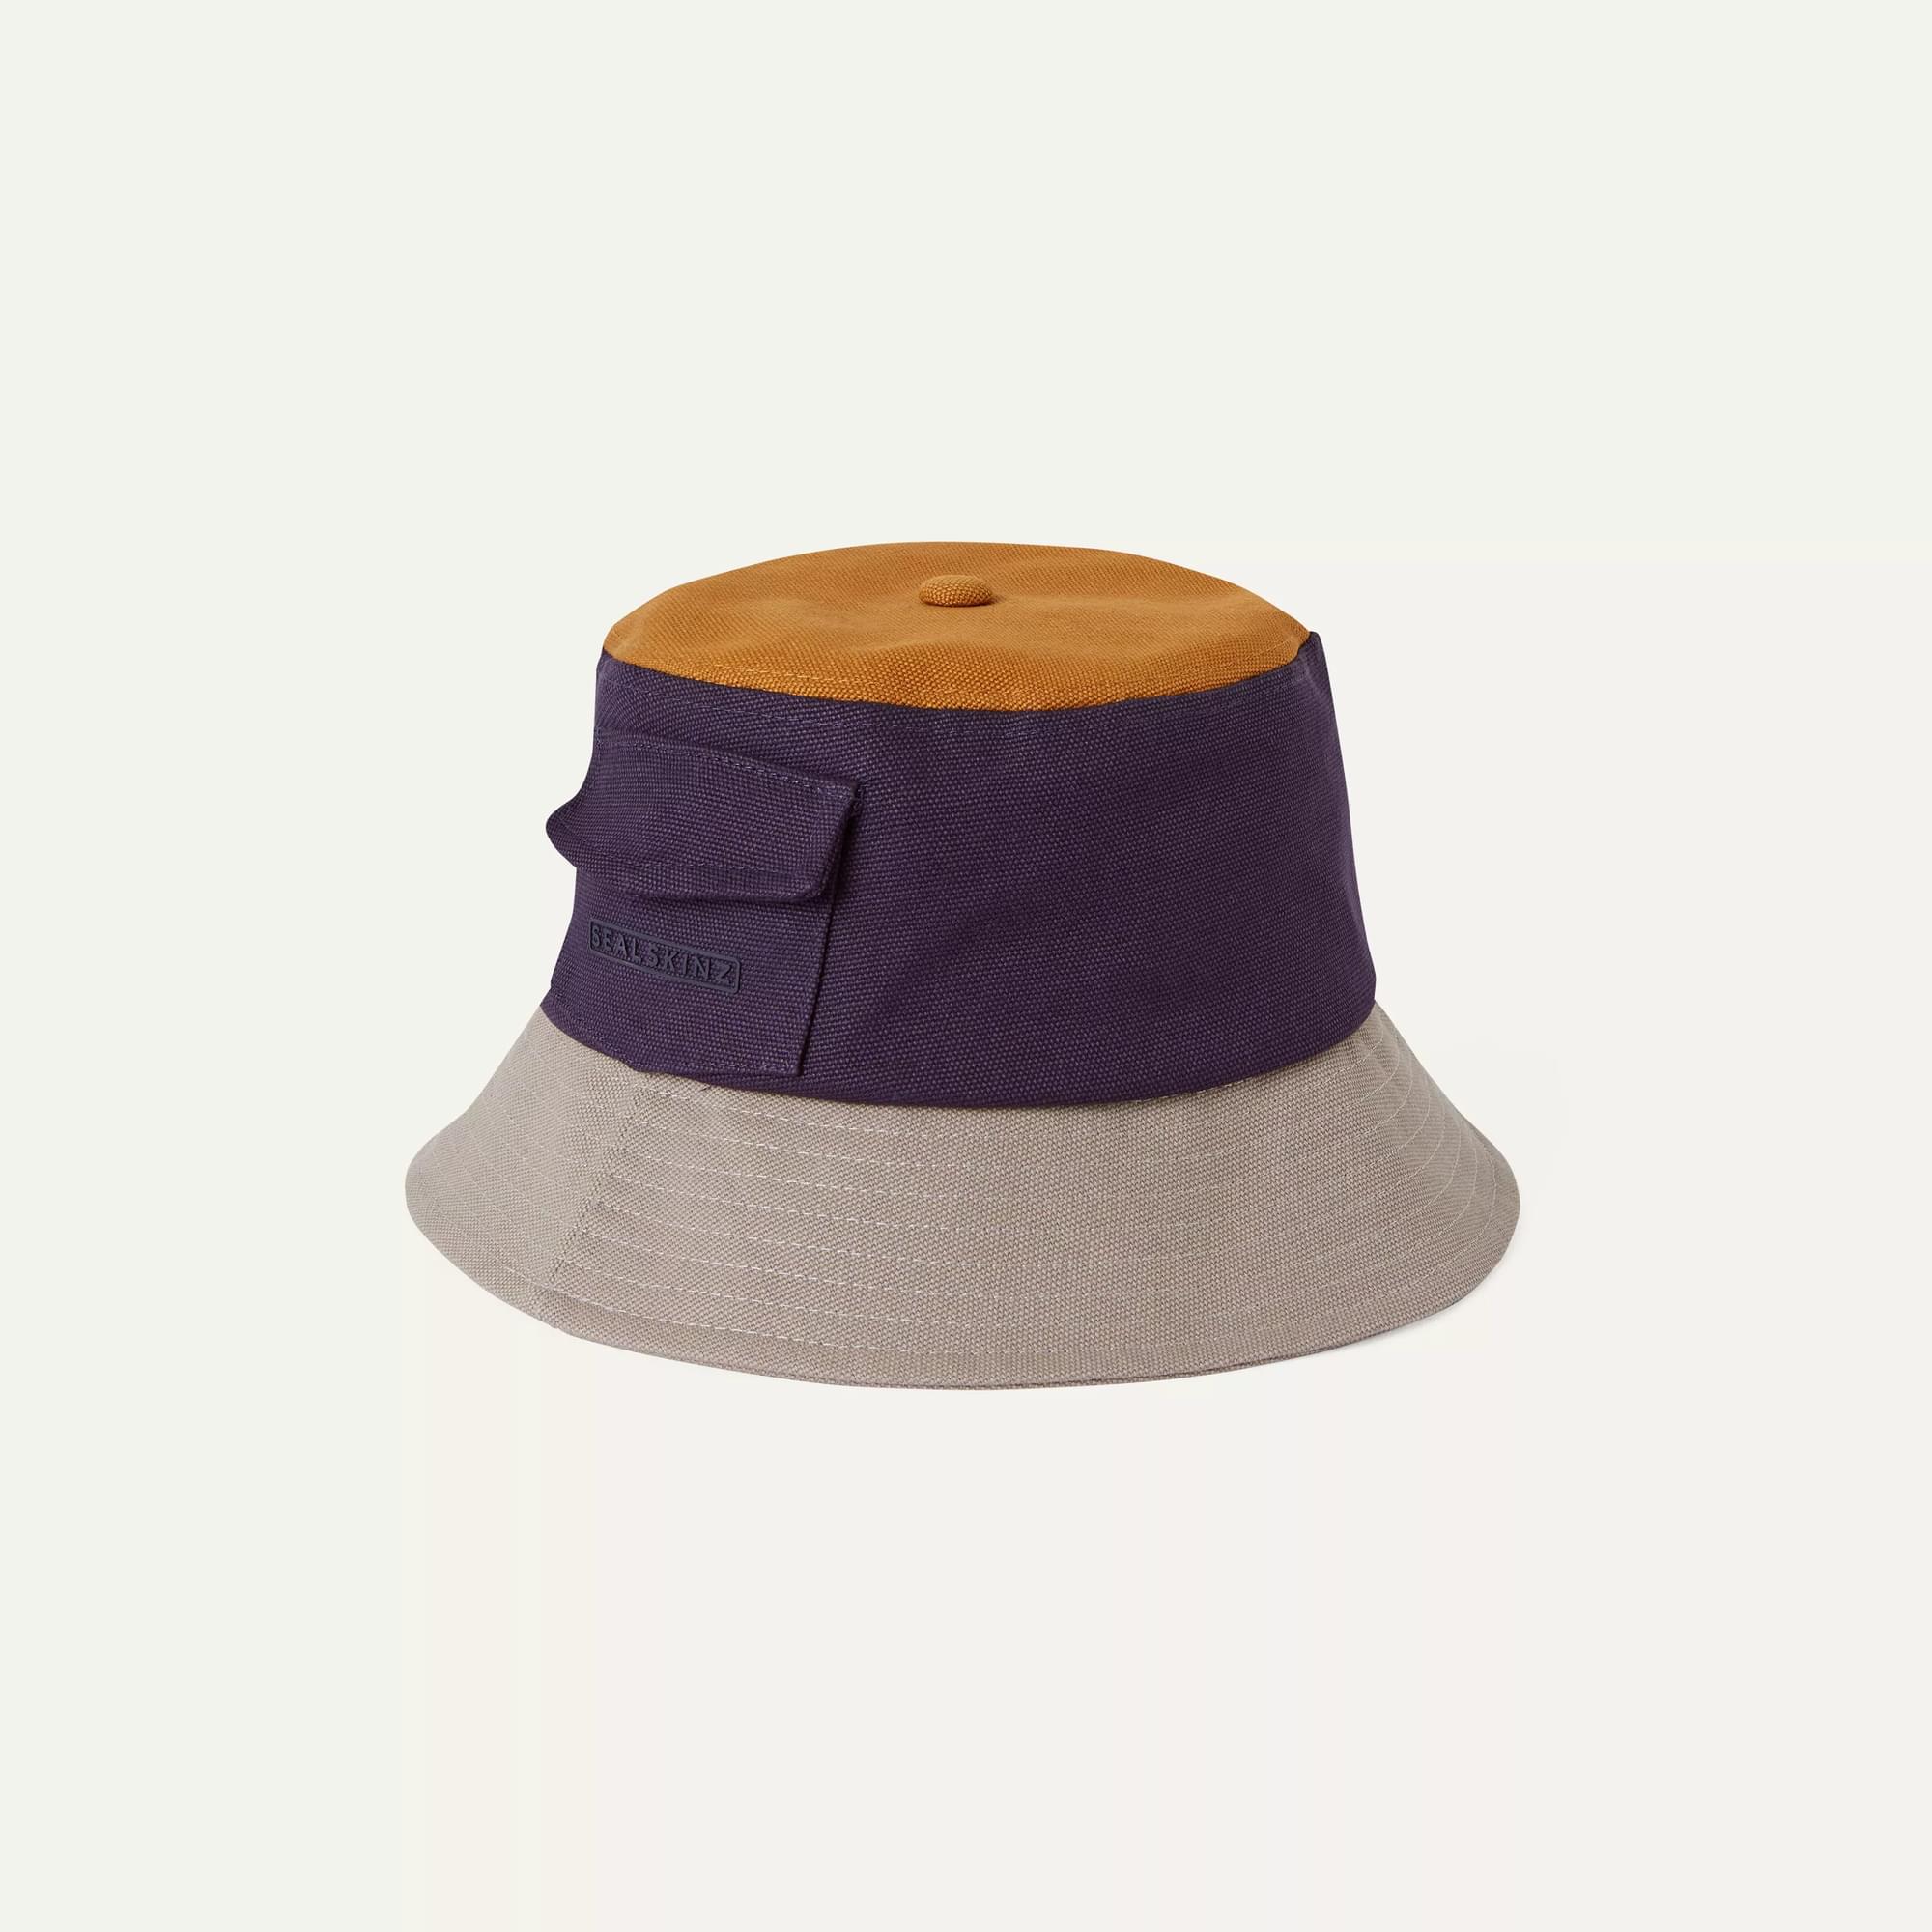 Sealskinz Waterproof Bucket Hat - Green/Pink/Blue - S/M